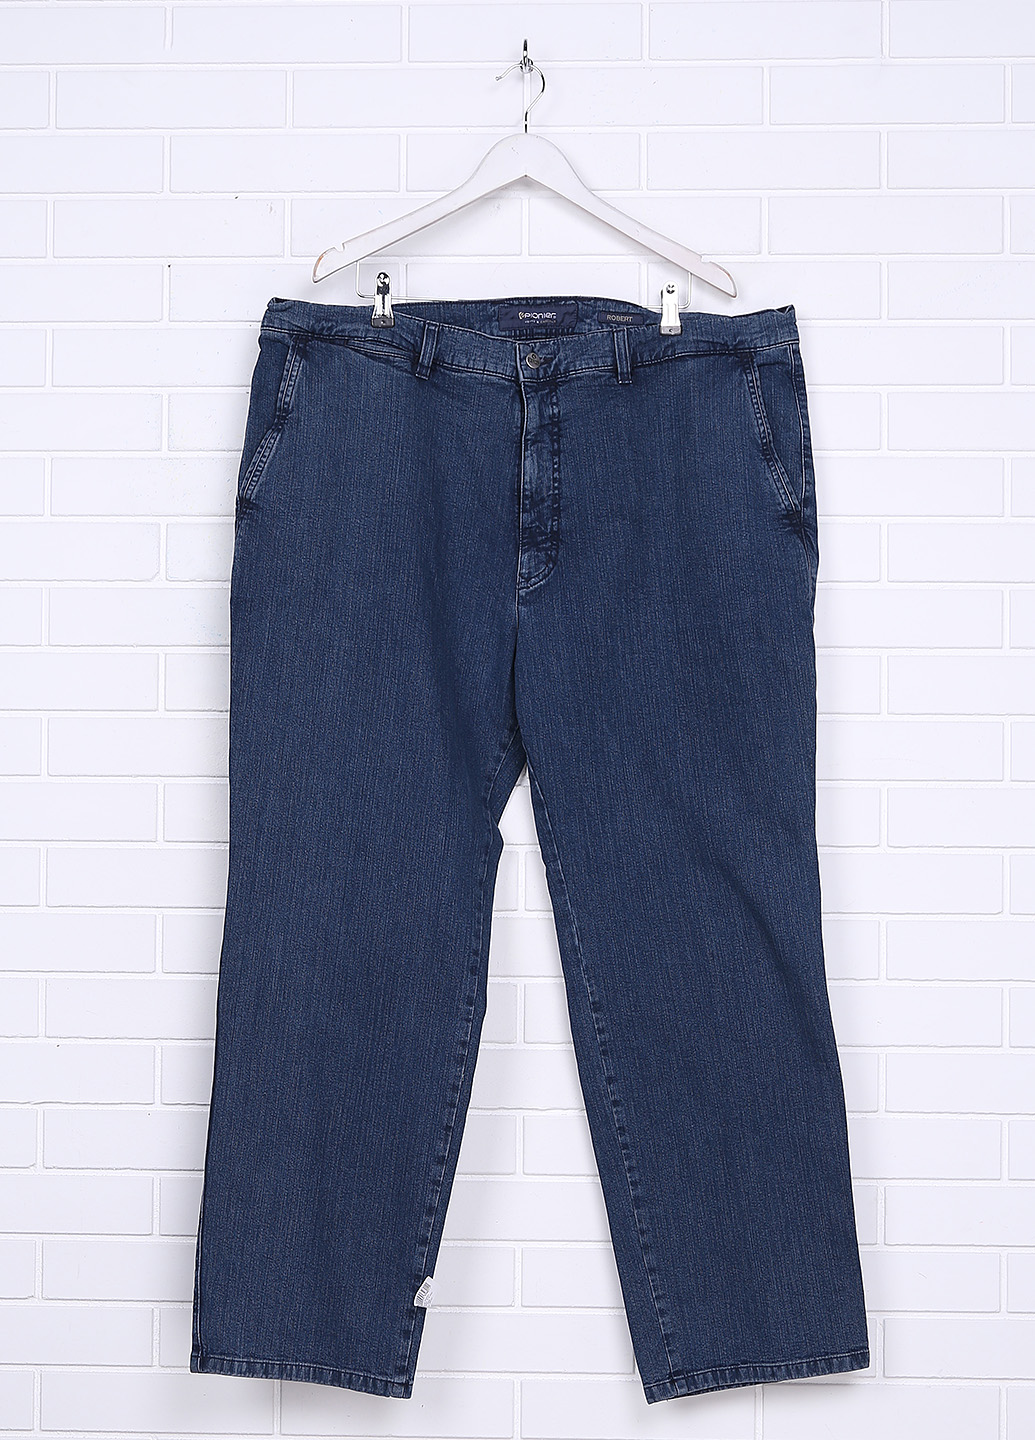 Чоловічі джинси Pioneer 56/34 Синій (P-6-004)